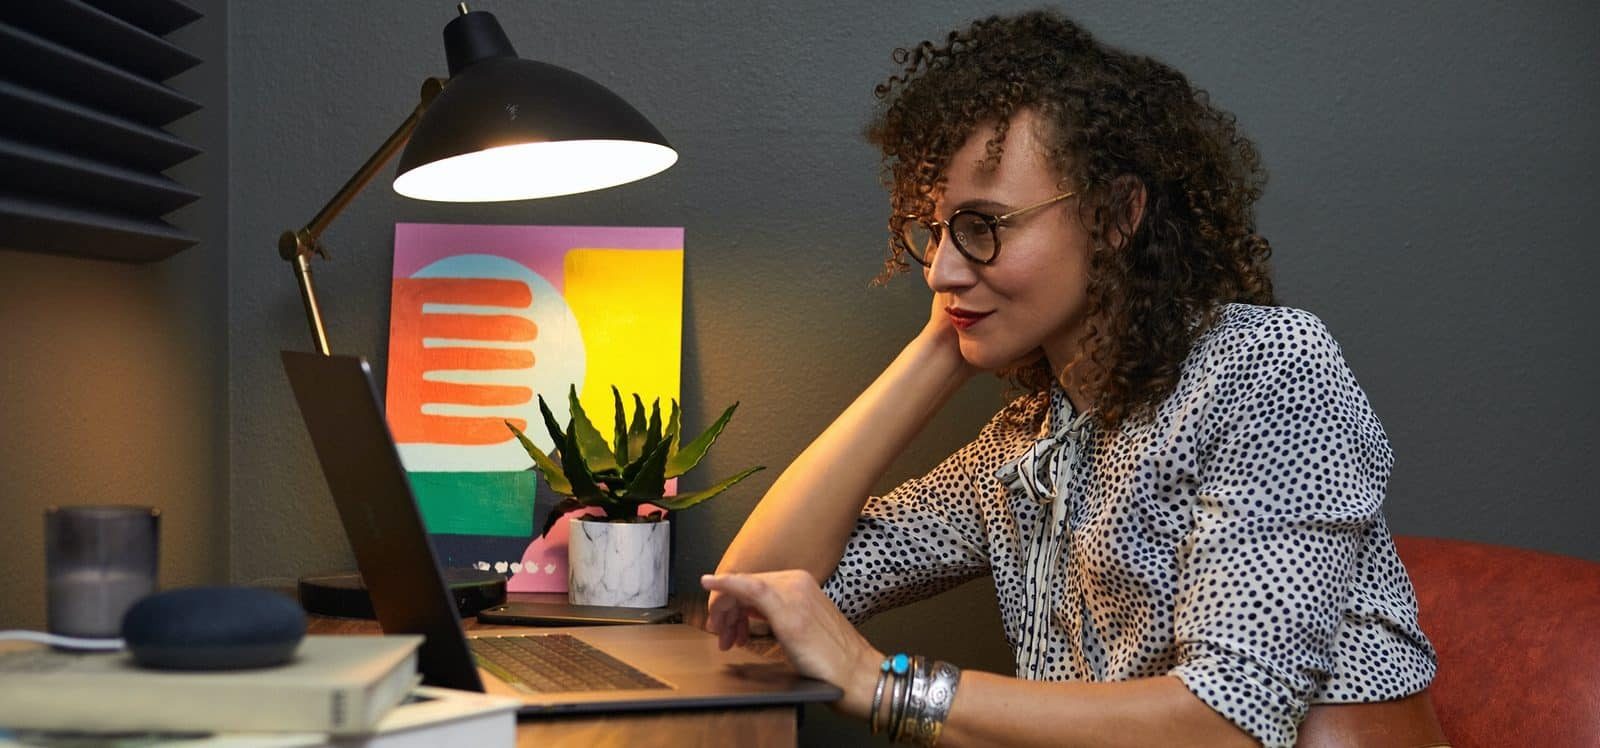 Een persoon die gamification gebruikt voor e-learning, zittend aan een bureau met een laptop, een lamp, een kamerplant en een schilderij op de achtergrond.